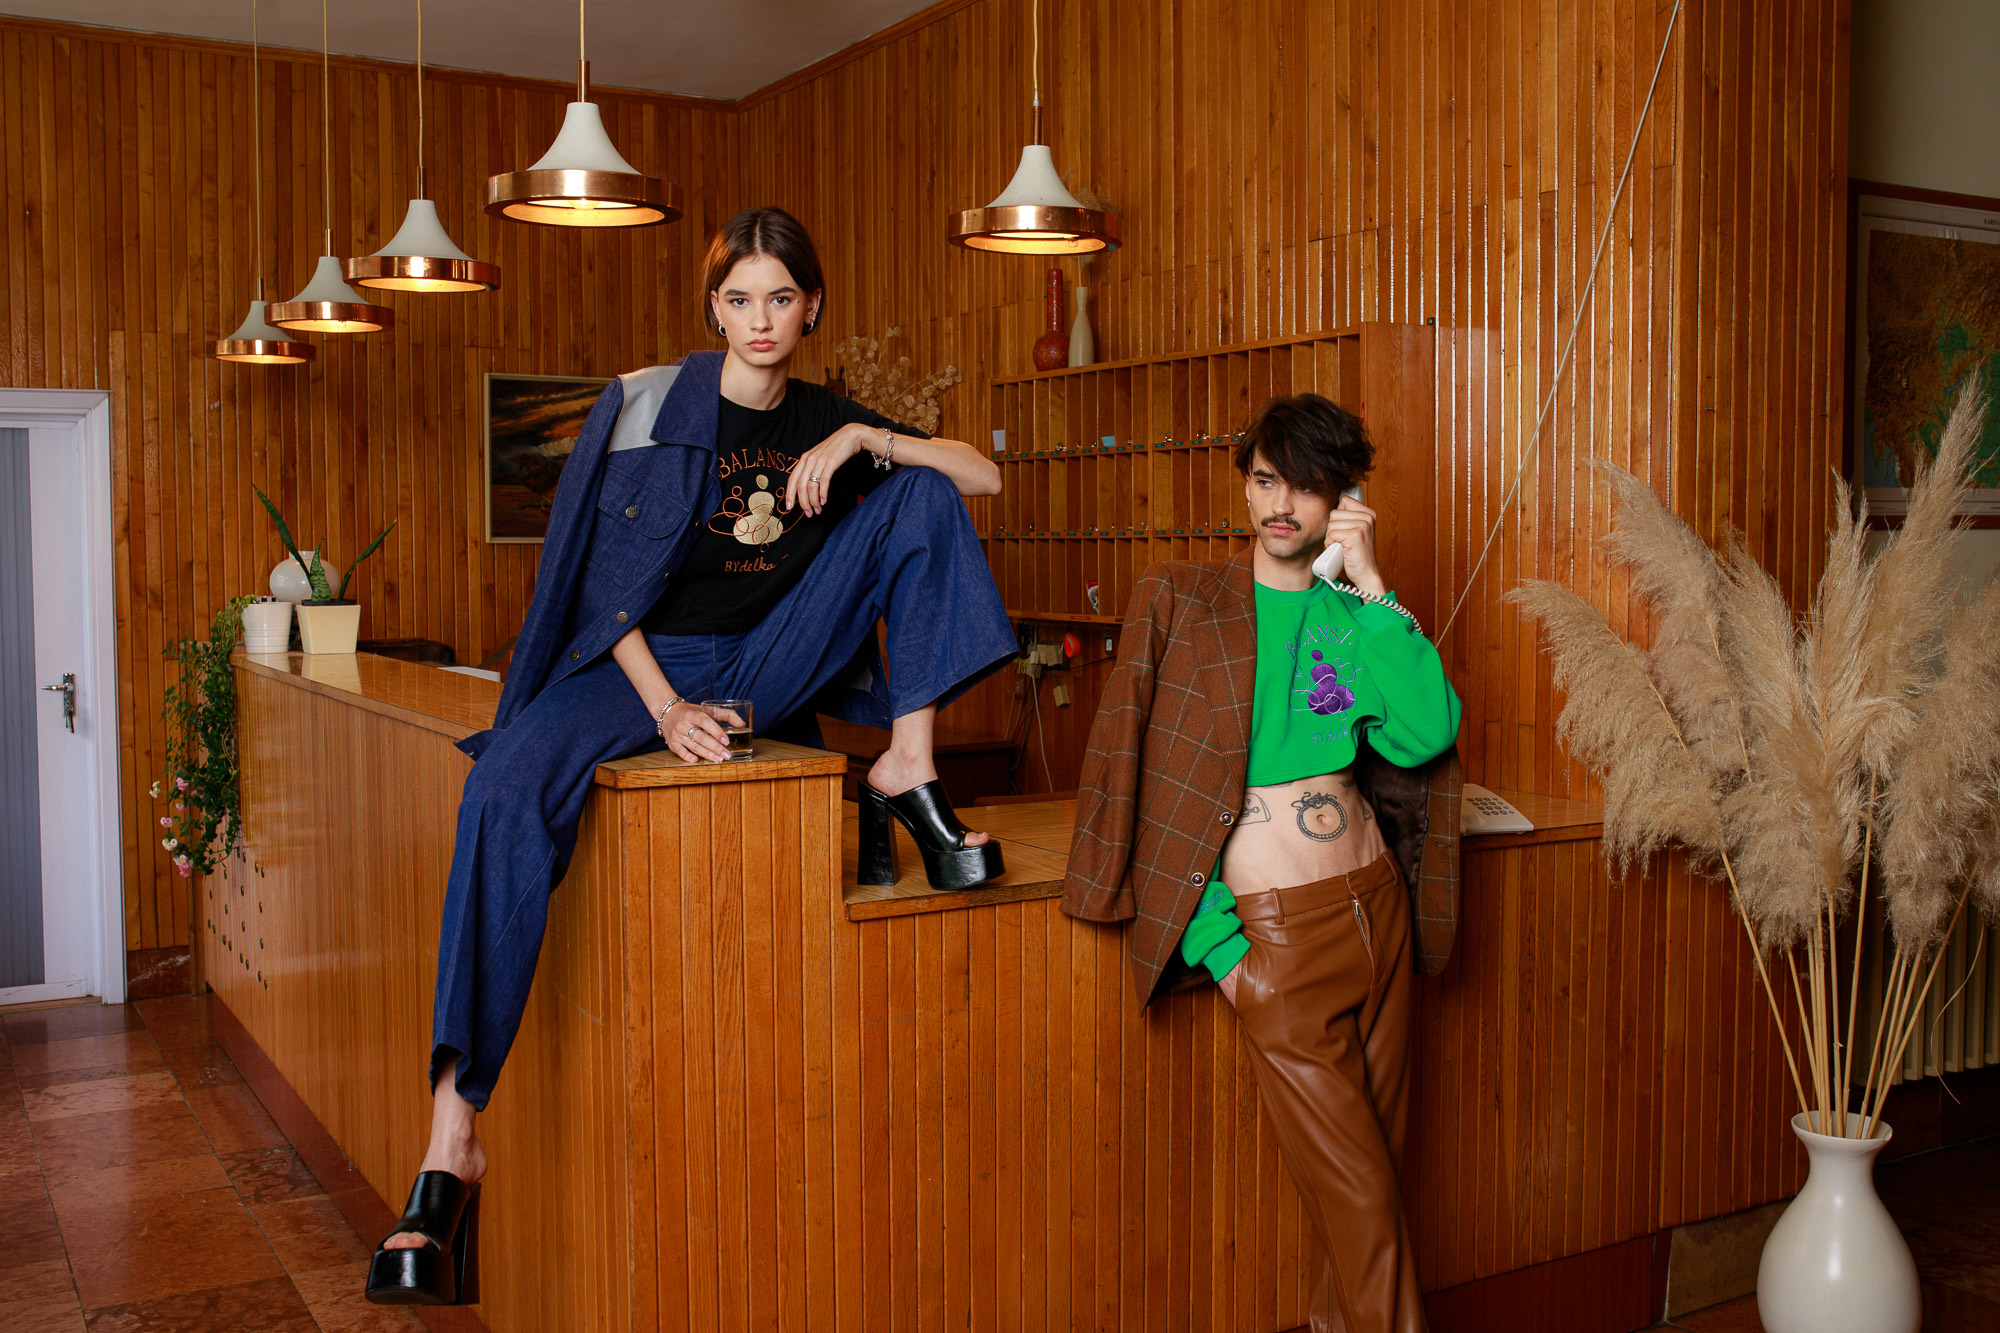 A divat és az egyensúly összhangba kerül a Delka bag új, környezetbarát kollekciójában